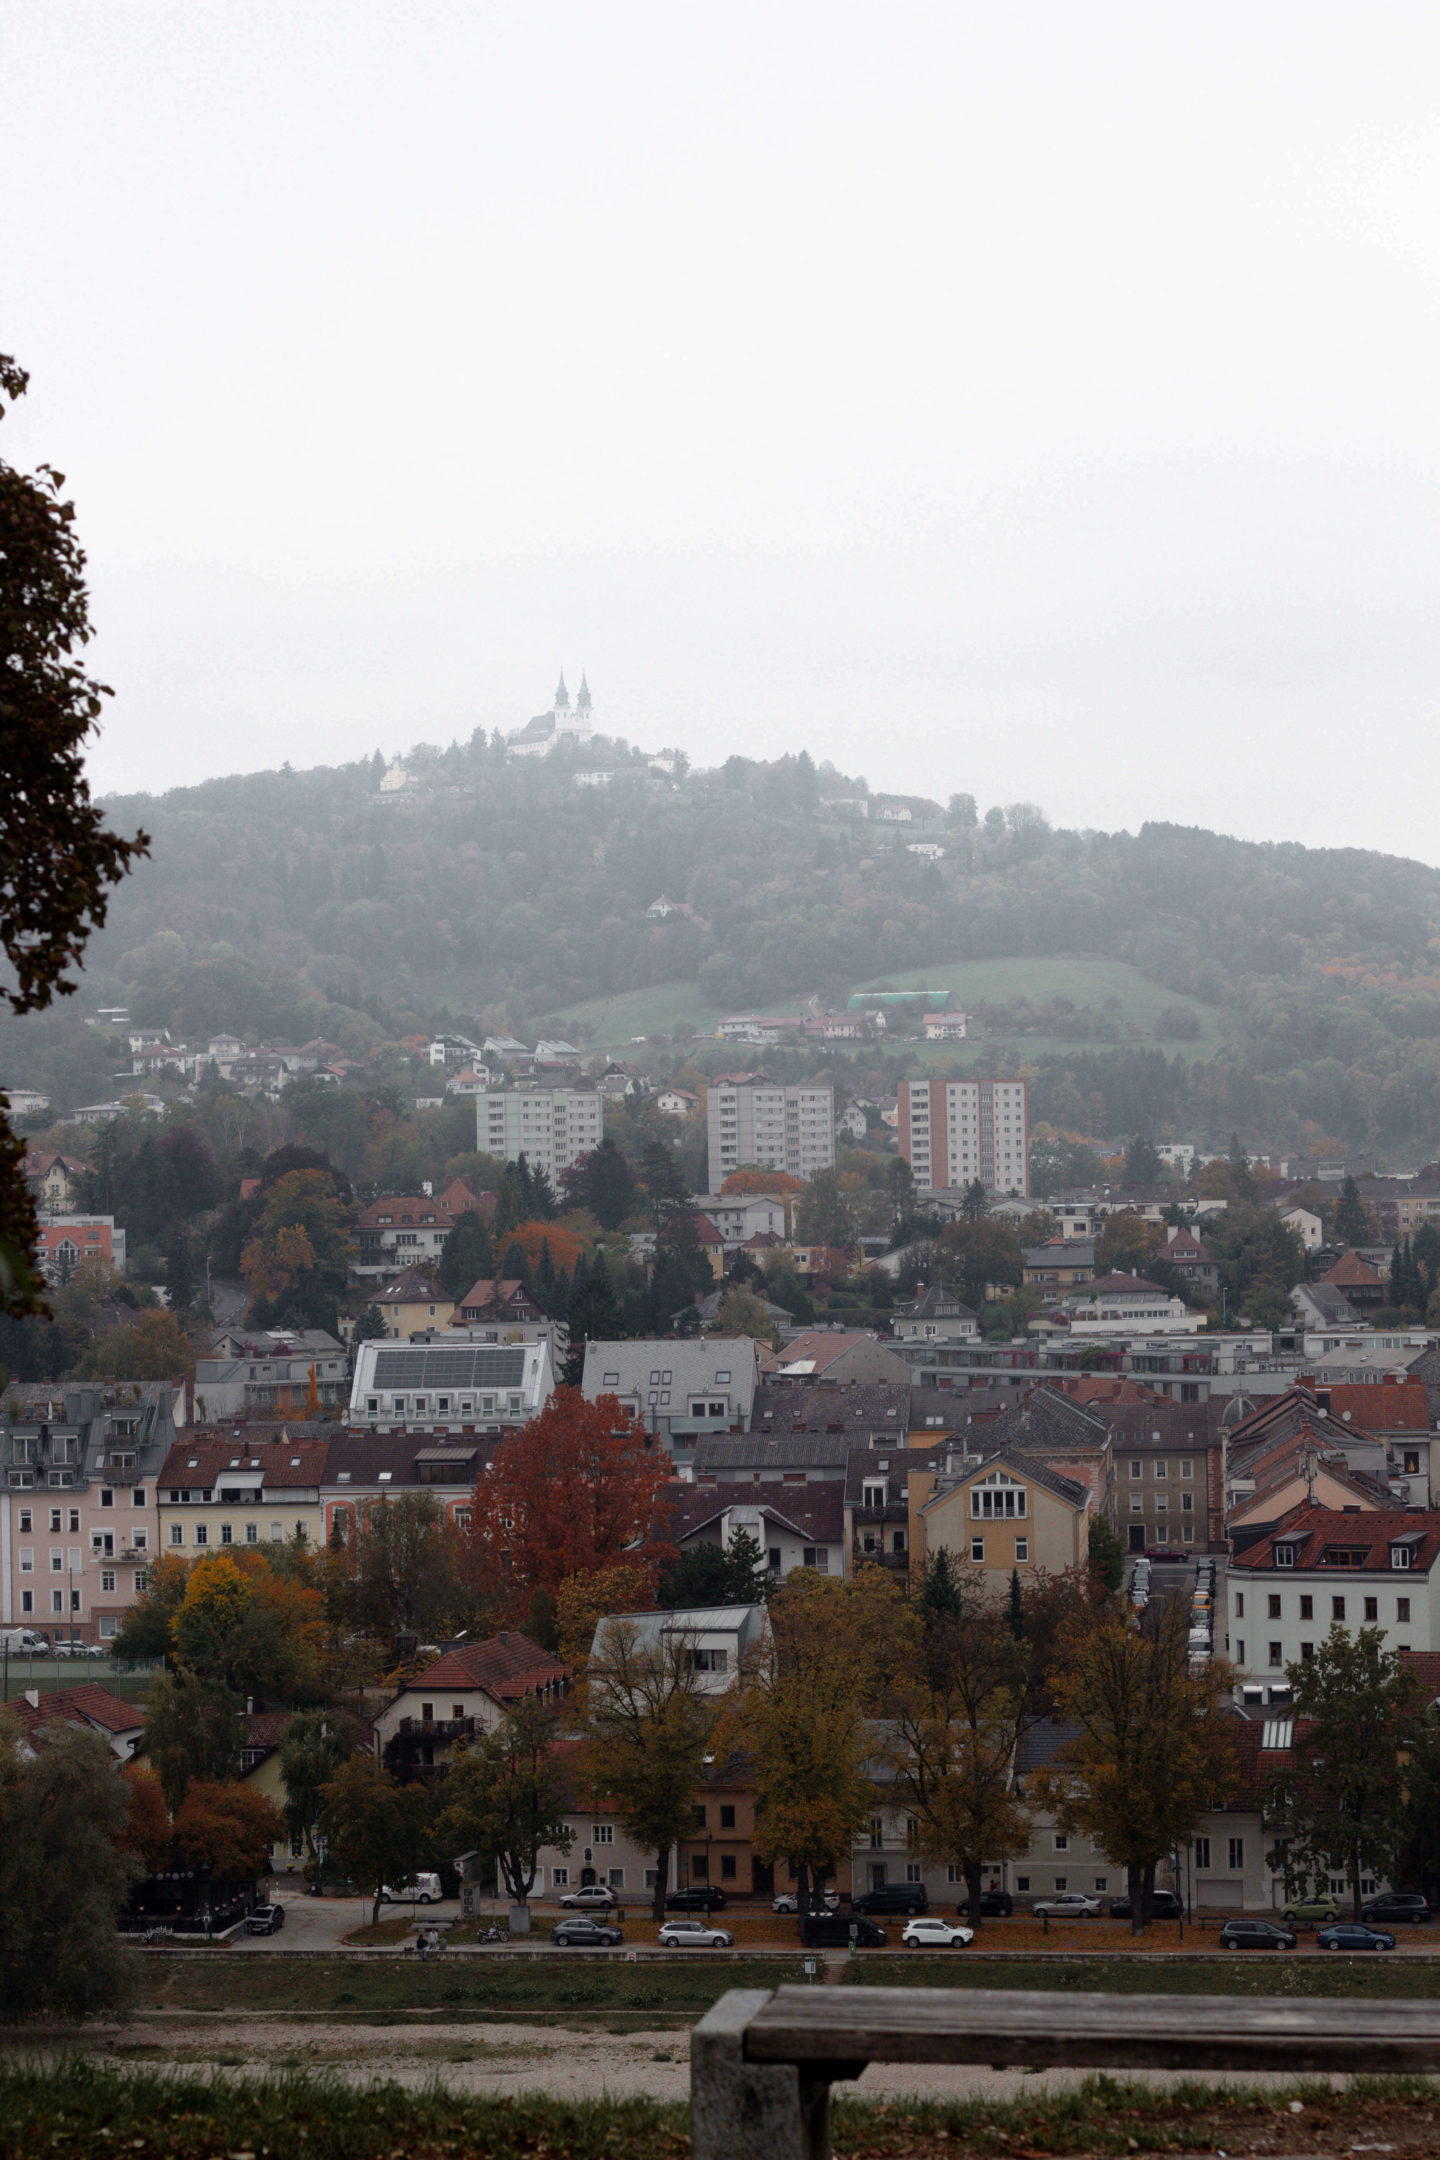 Herbstbummel-in-der-Linzer-Altstadt-Linz-Touristen-Sightseeing-Pöstlingberg-Nebel-Donau-Dein-HomeSpa-Food-Wohlfühlblog-aus-dem-Mostviertel